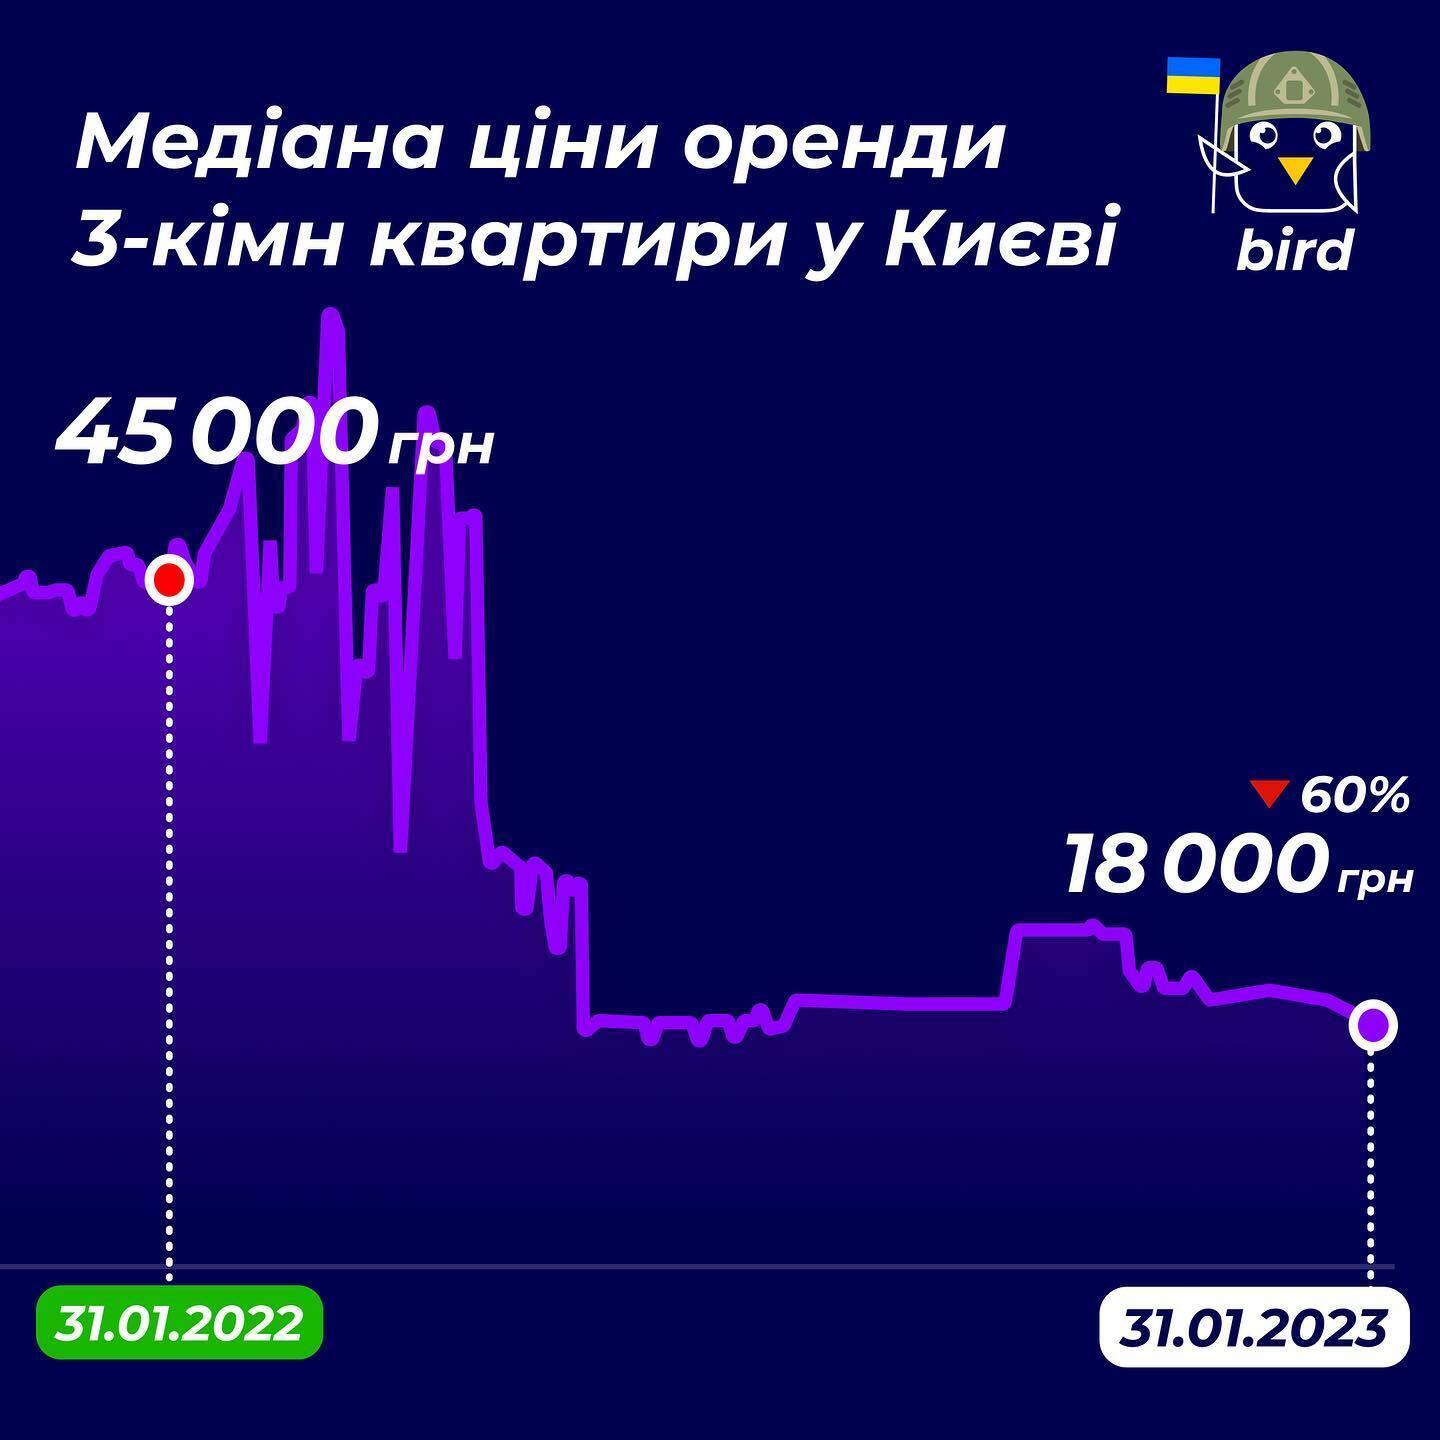 Оренда 3-кімнатної квартири у Львові коштуватиме в середньому 19 000 грн, у Києві – 18 000 грн